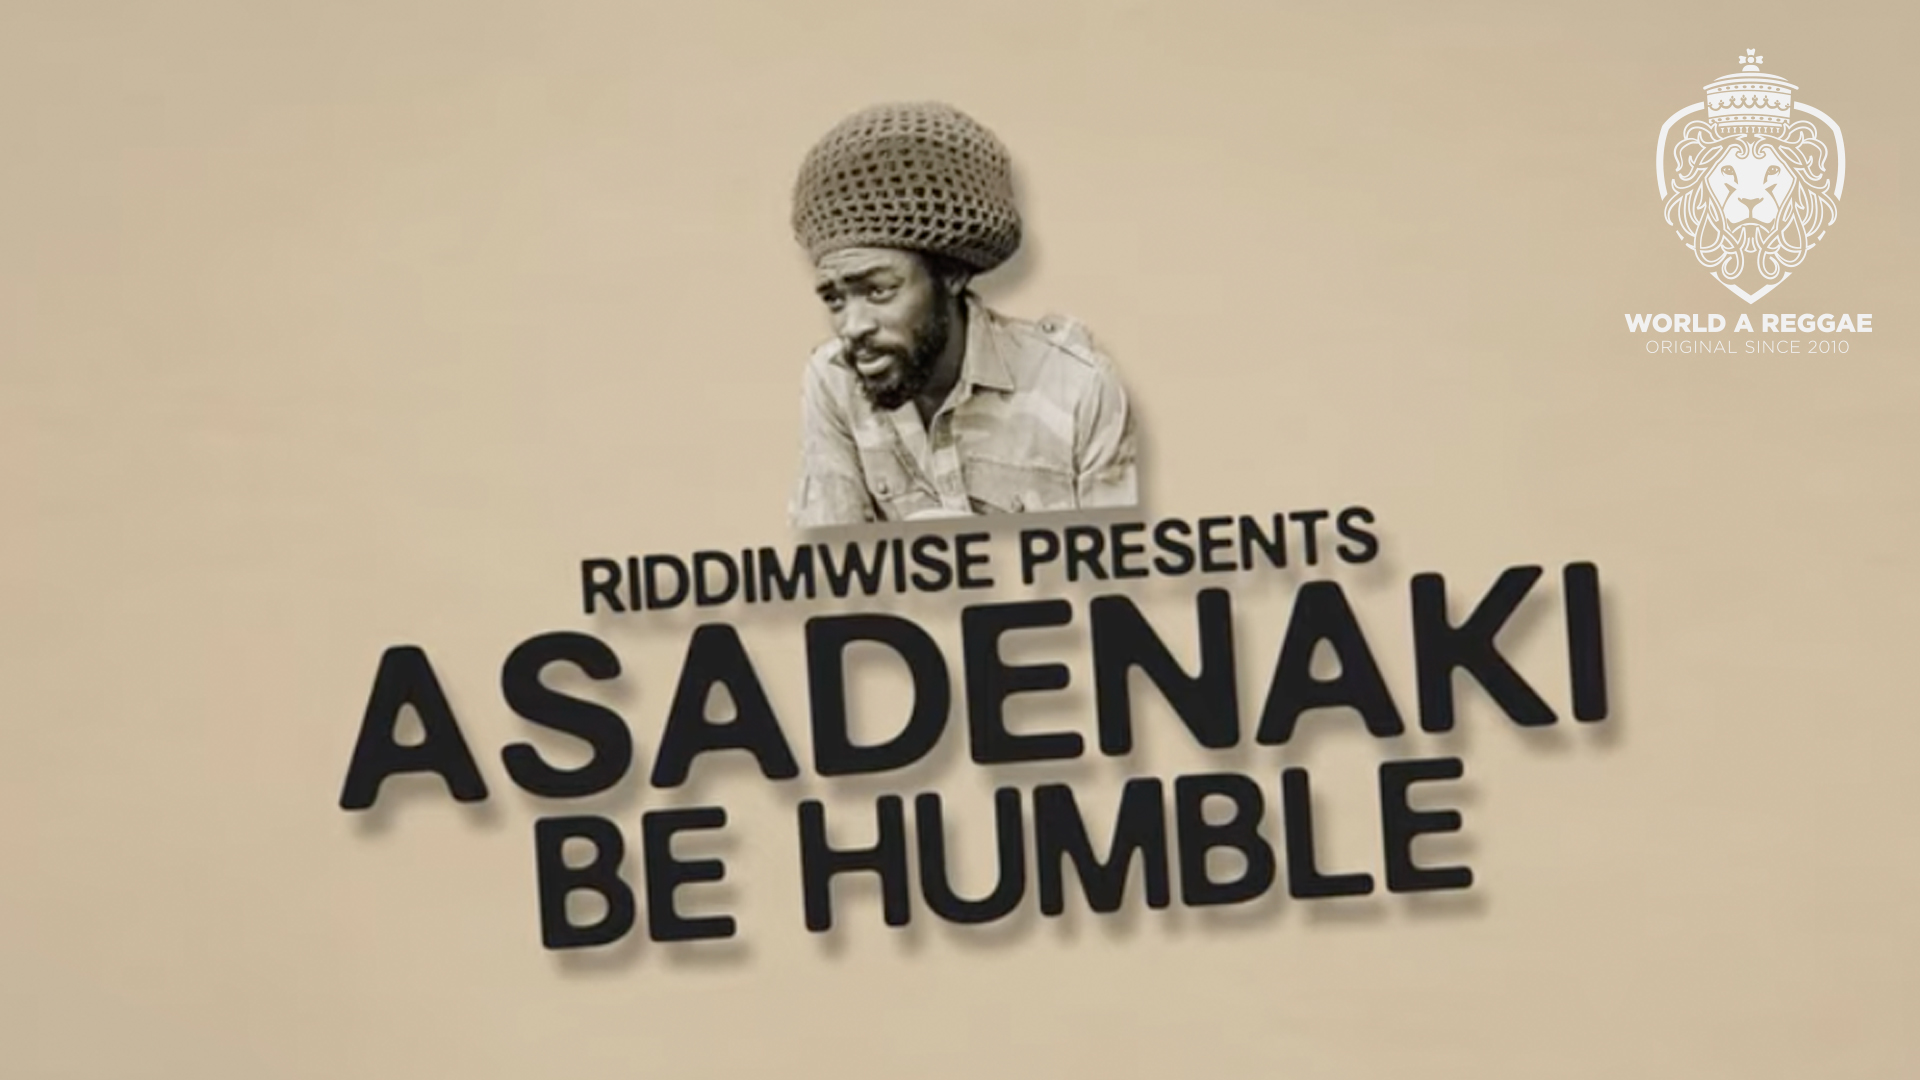 be humble Asadenaki